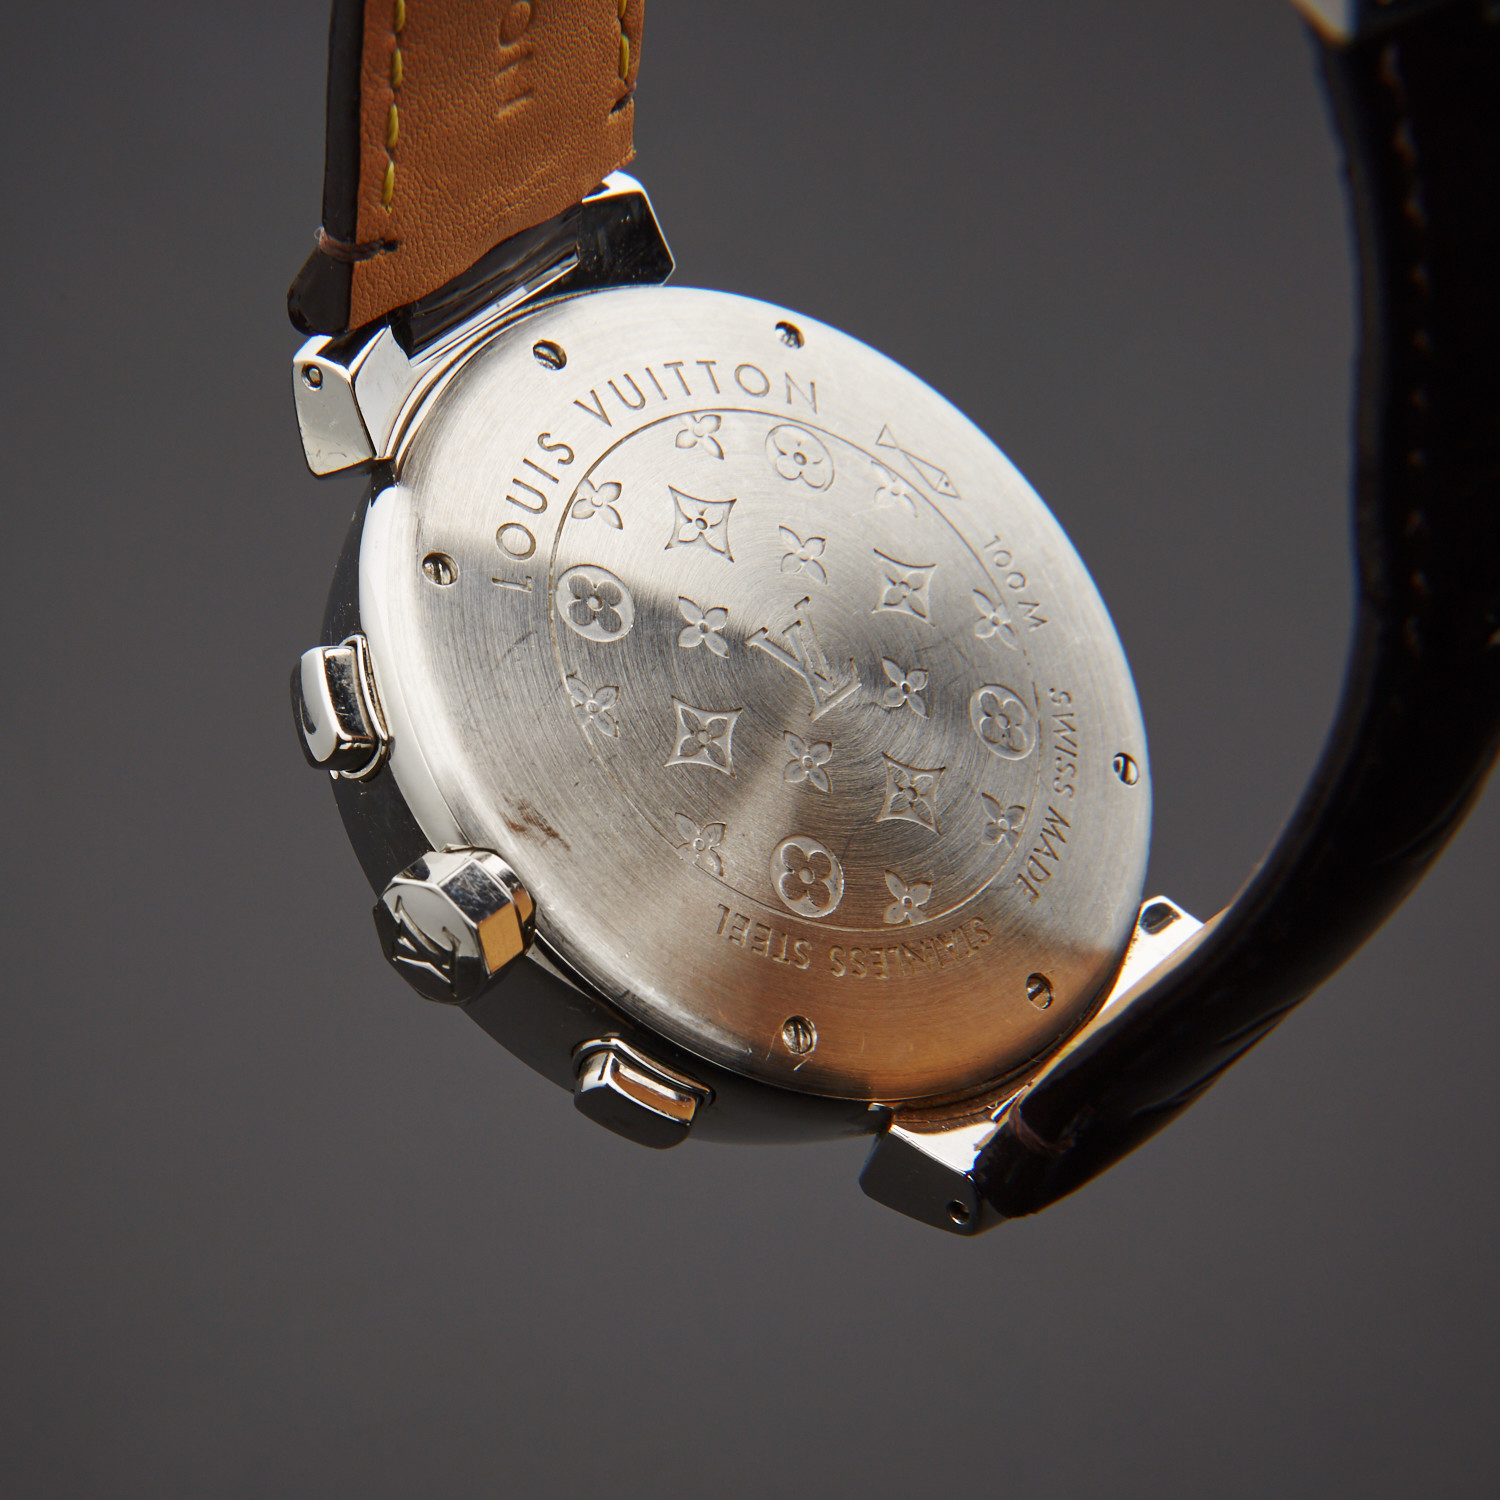 Louis Vuitton Tambour Chronograph Automatic Q1121 